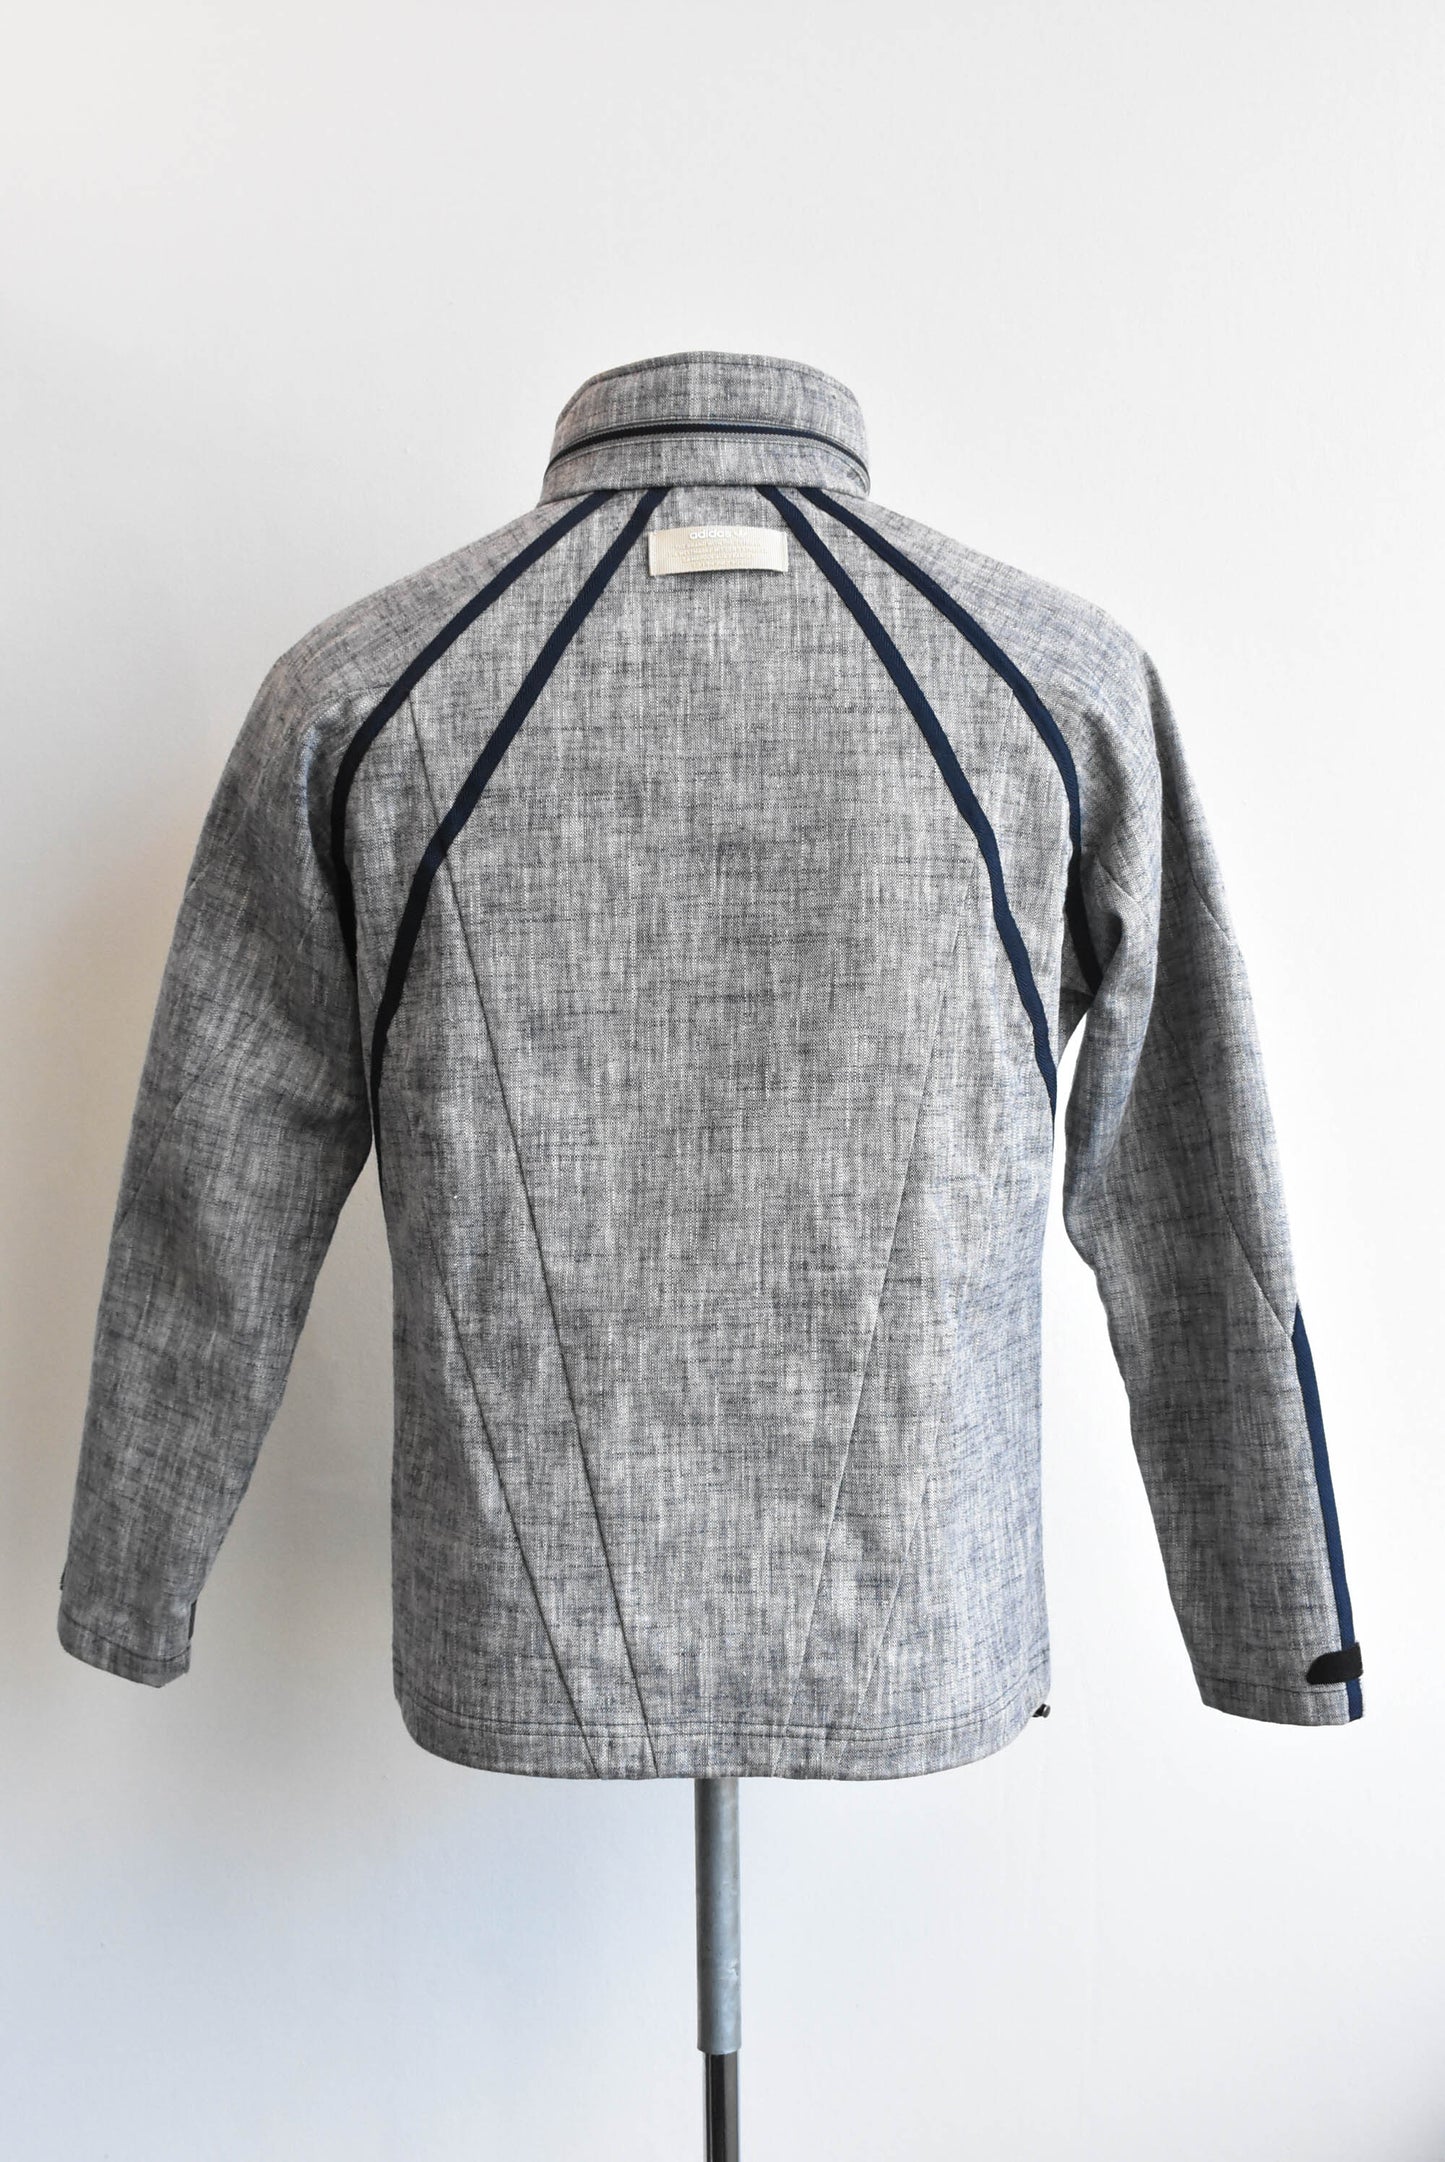 Adidas grey jacket, size S